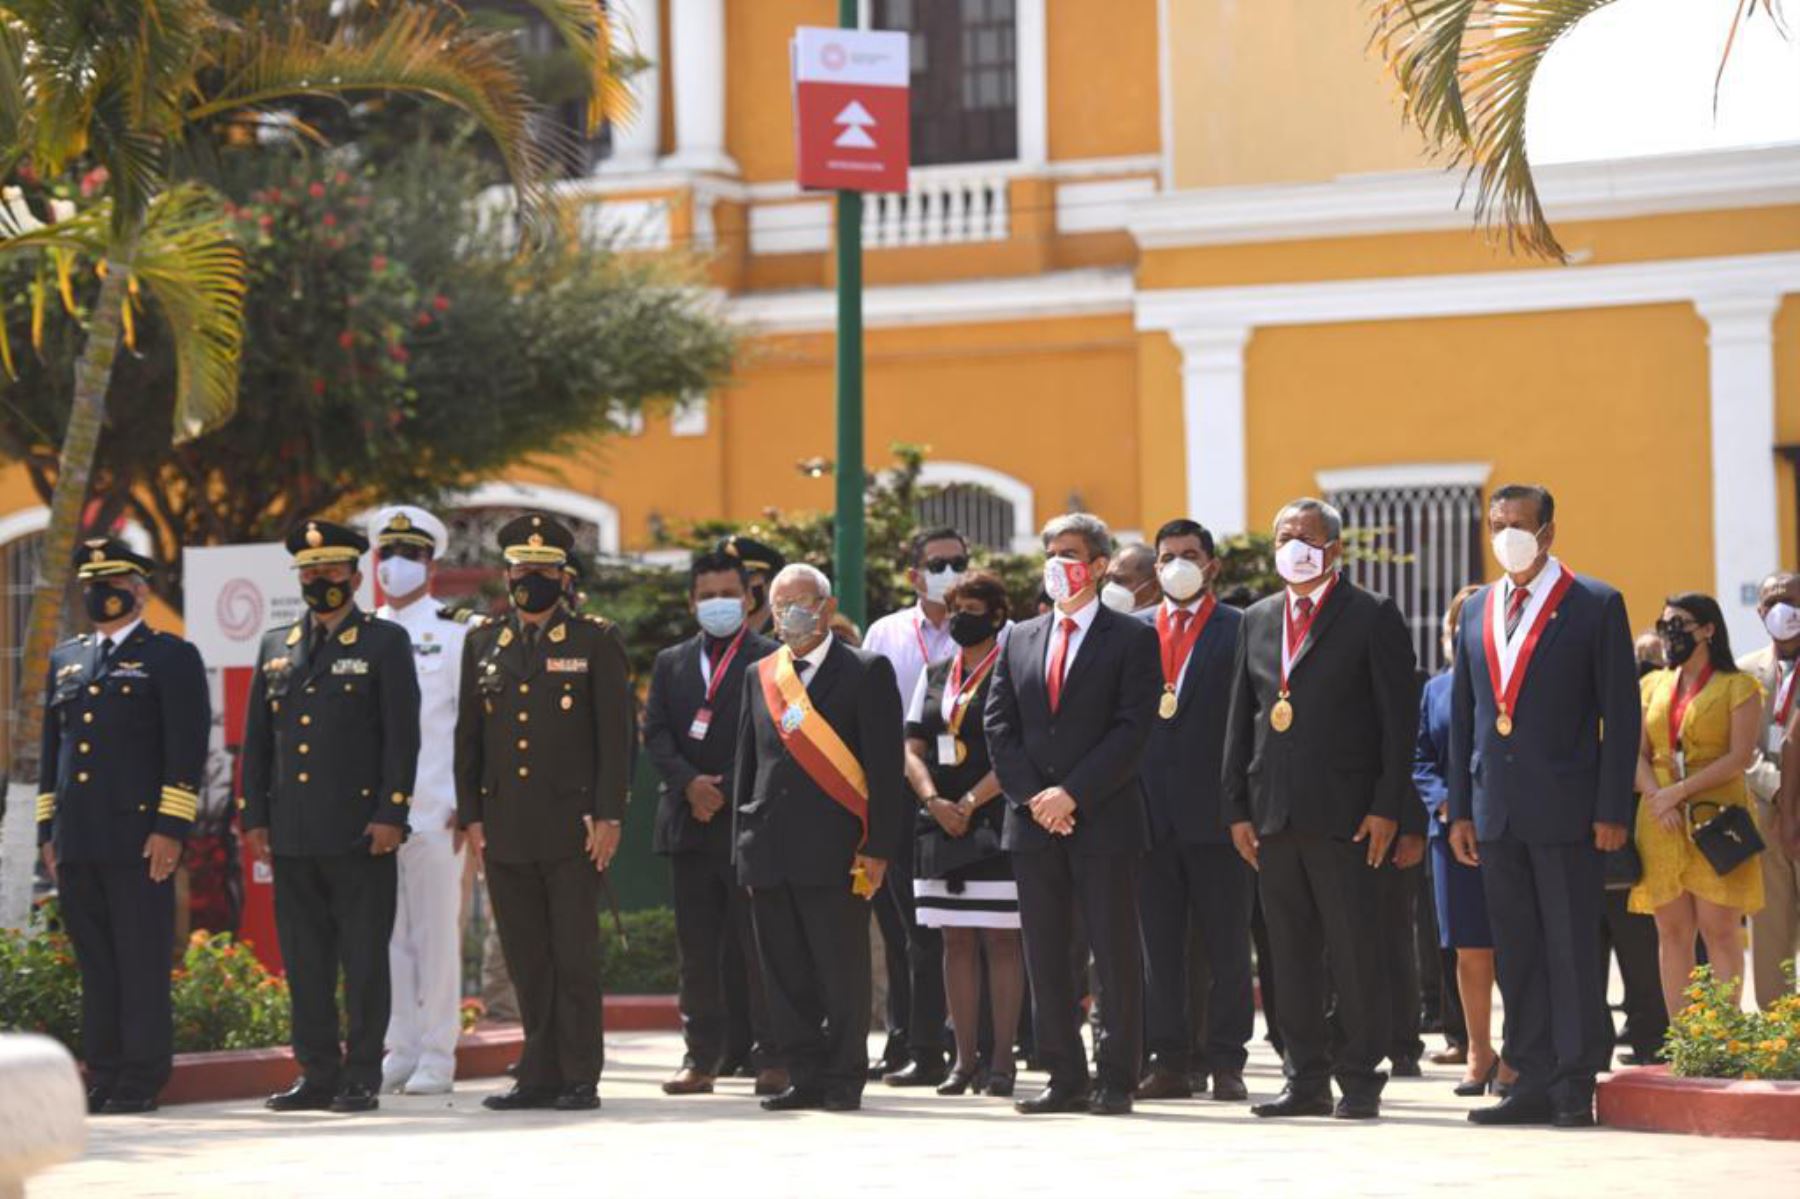 La ceremonia inicia con el izamiento del Pabellón Nacional y la entonación del Himno Nacional del Perú.
Foto:ANDINA/MinCulturaPe